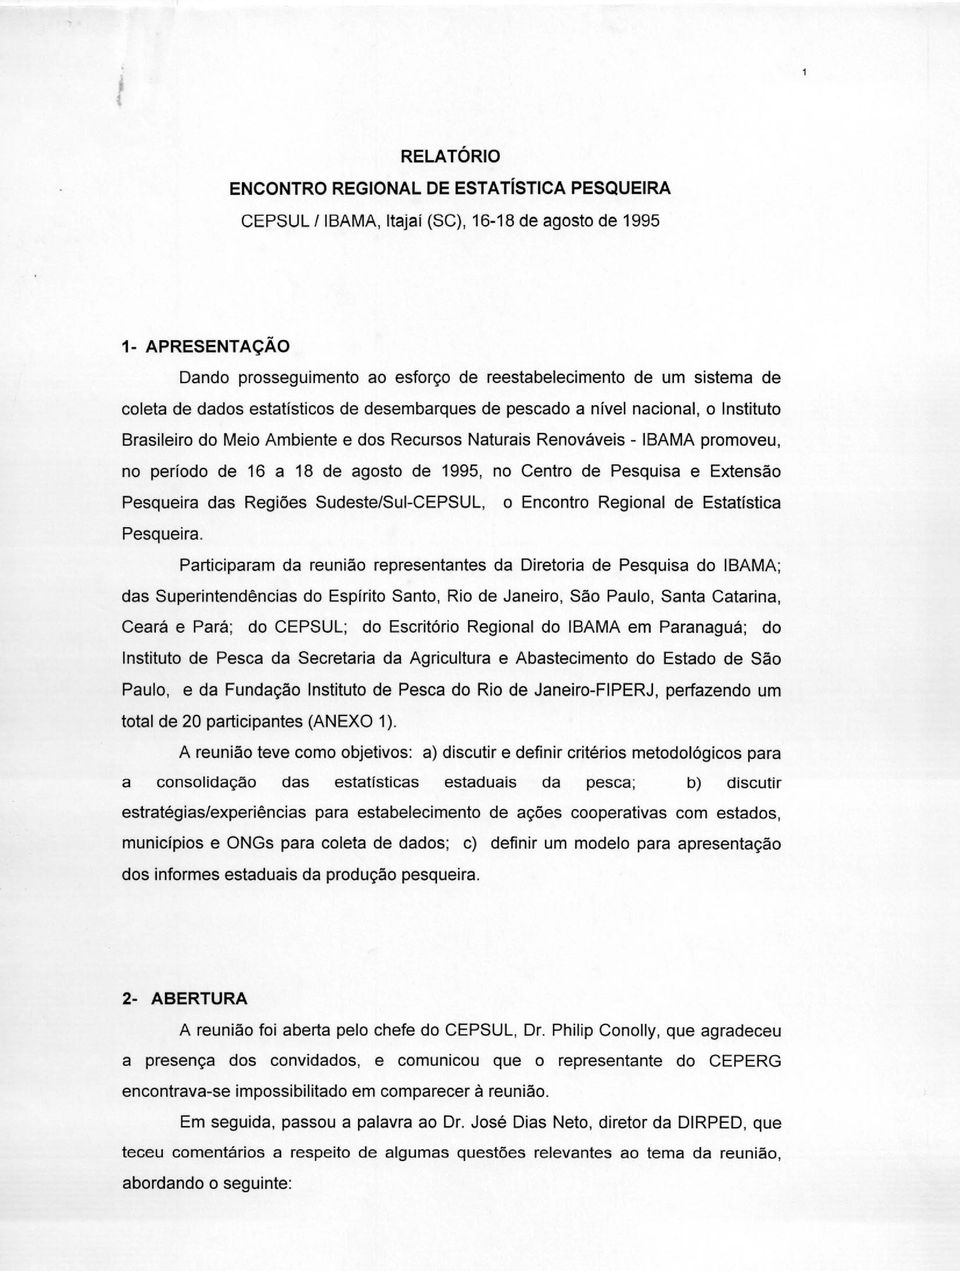 1995, no Centro de Pesquisa e Extensão Pesqueira das Regiões Sudeste/Sul-CEPSUL, o Encontro Regional de Estatística Pesqueira.